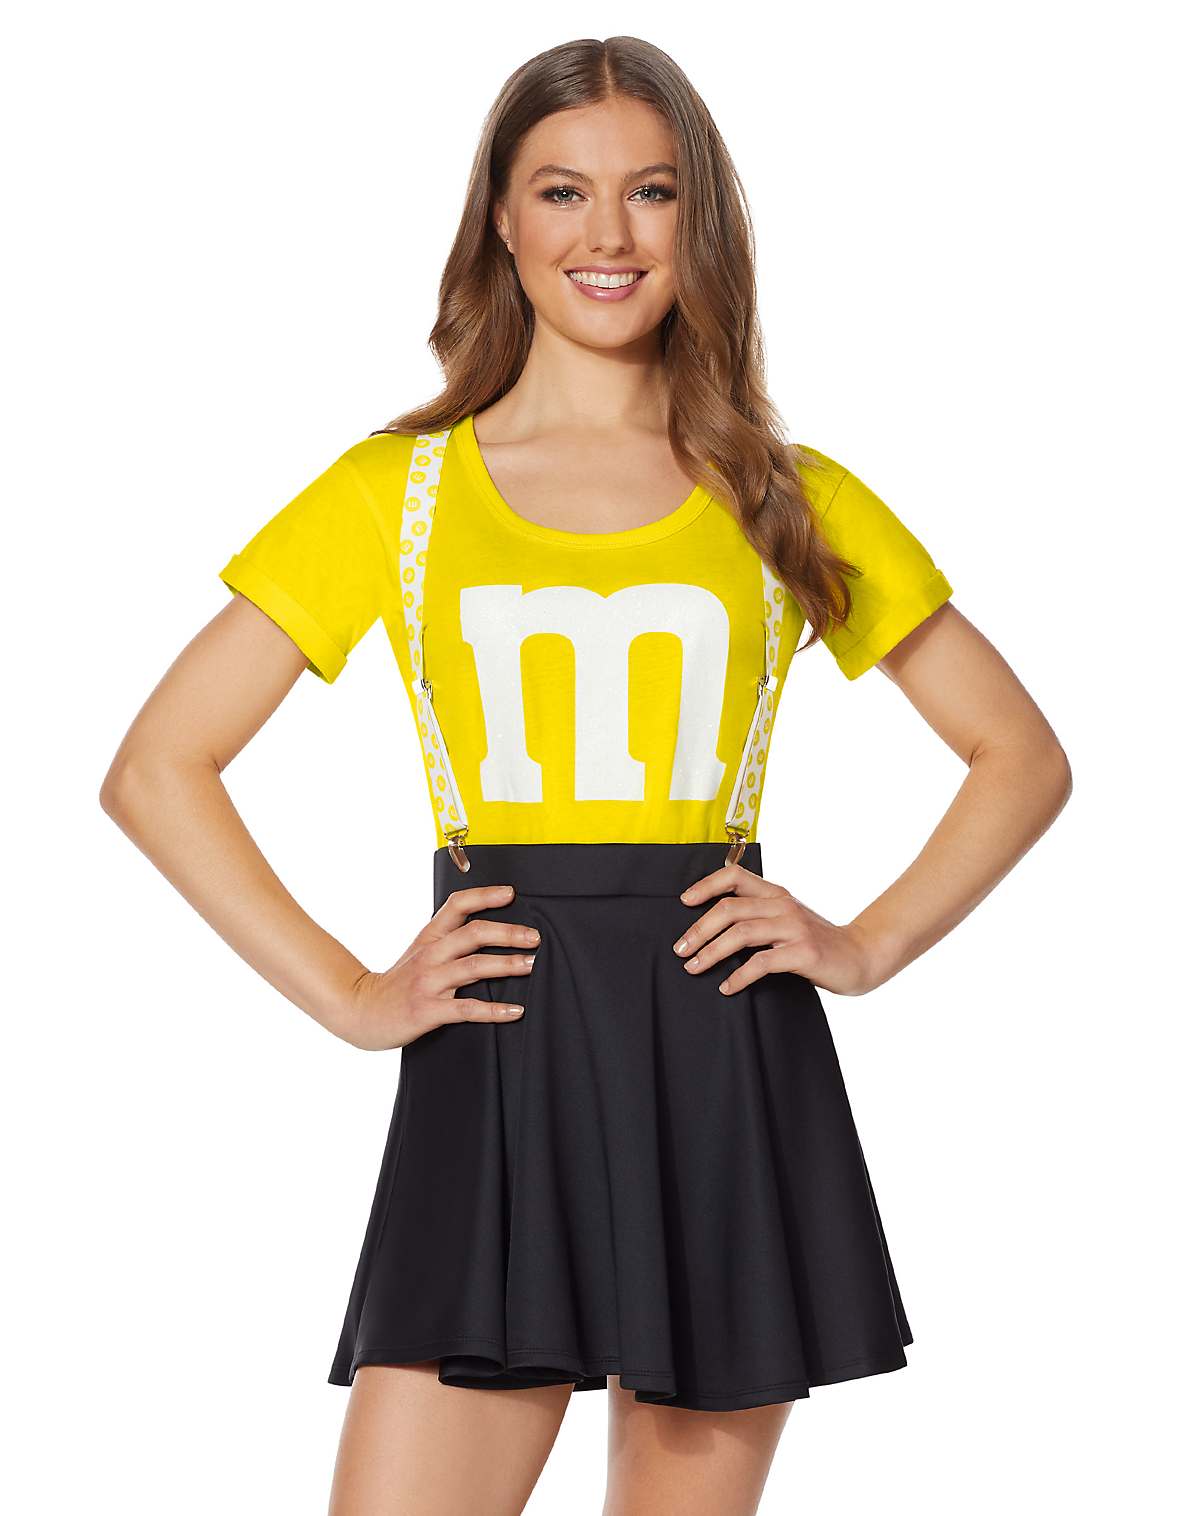 Women's Yellow M&M Costume